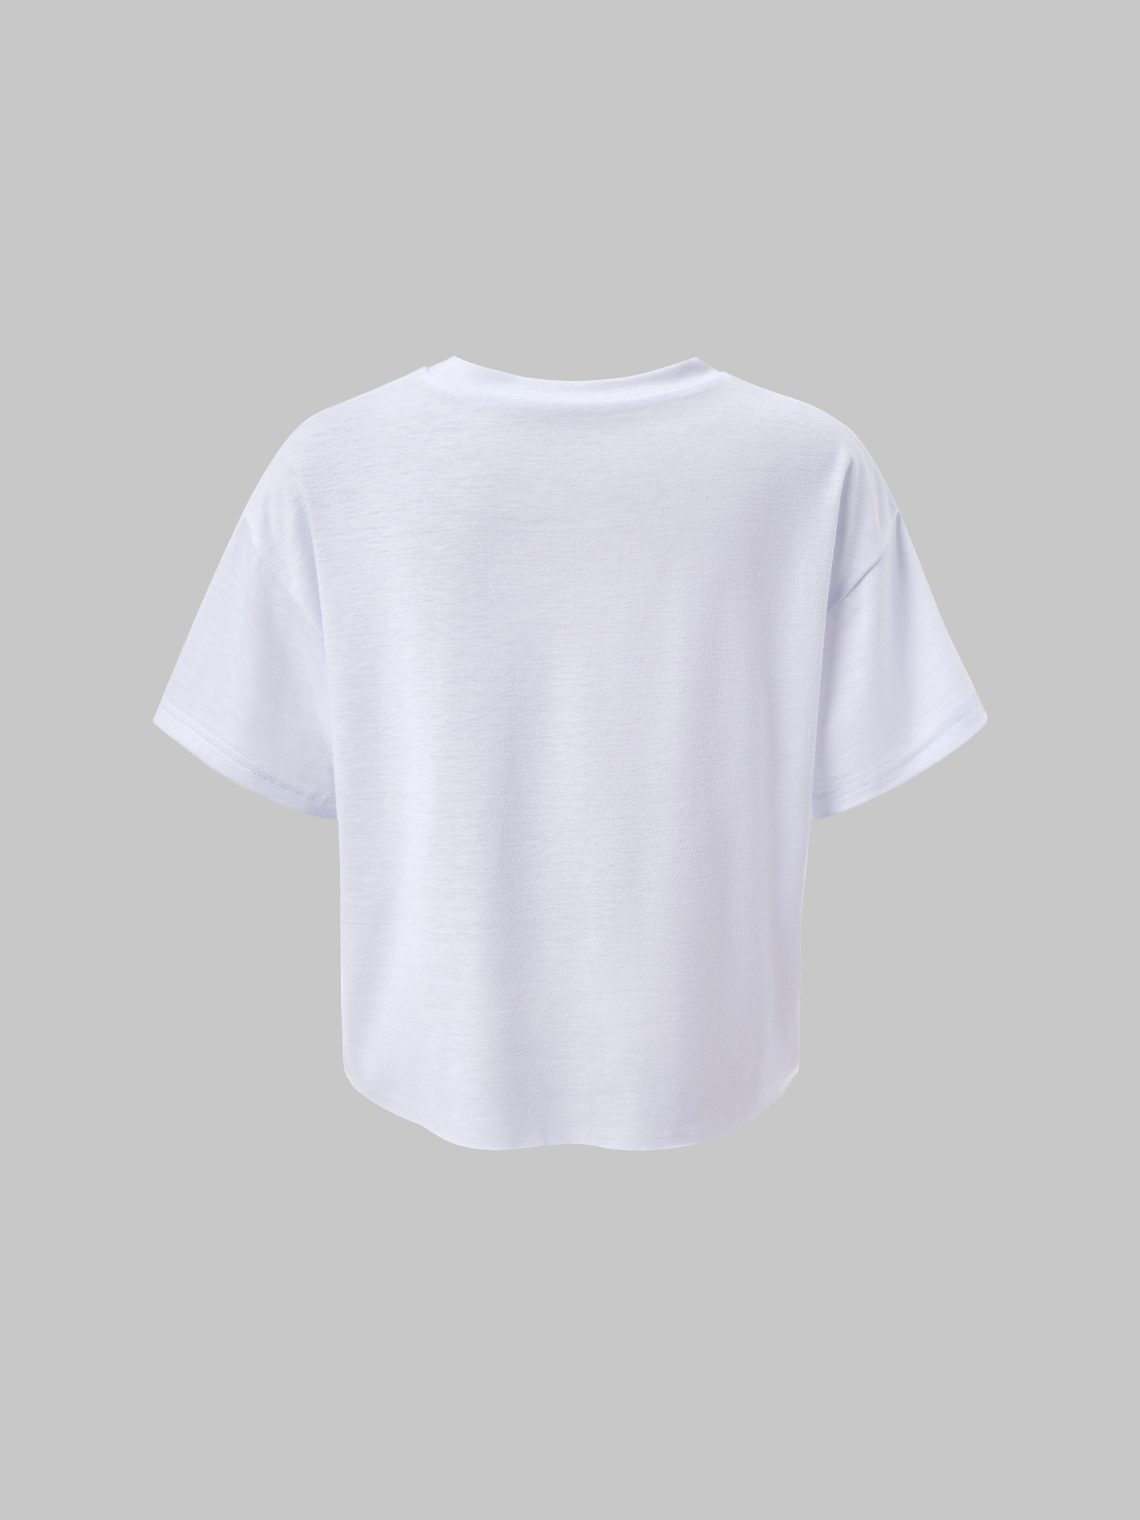 Street White Body Print Top T-Shirt | kollyy